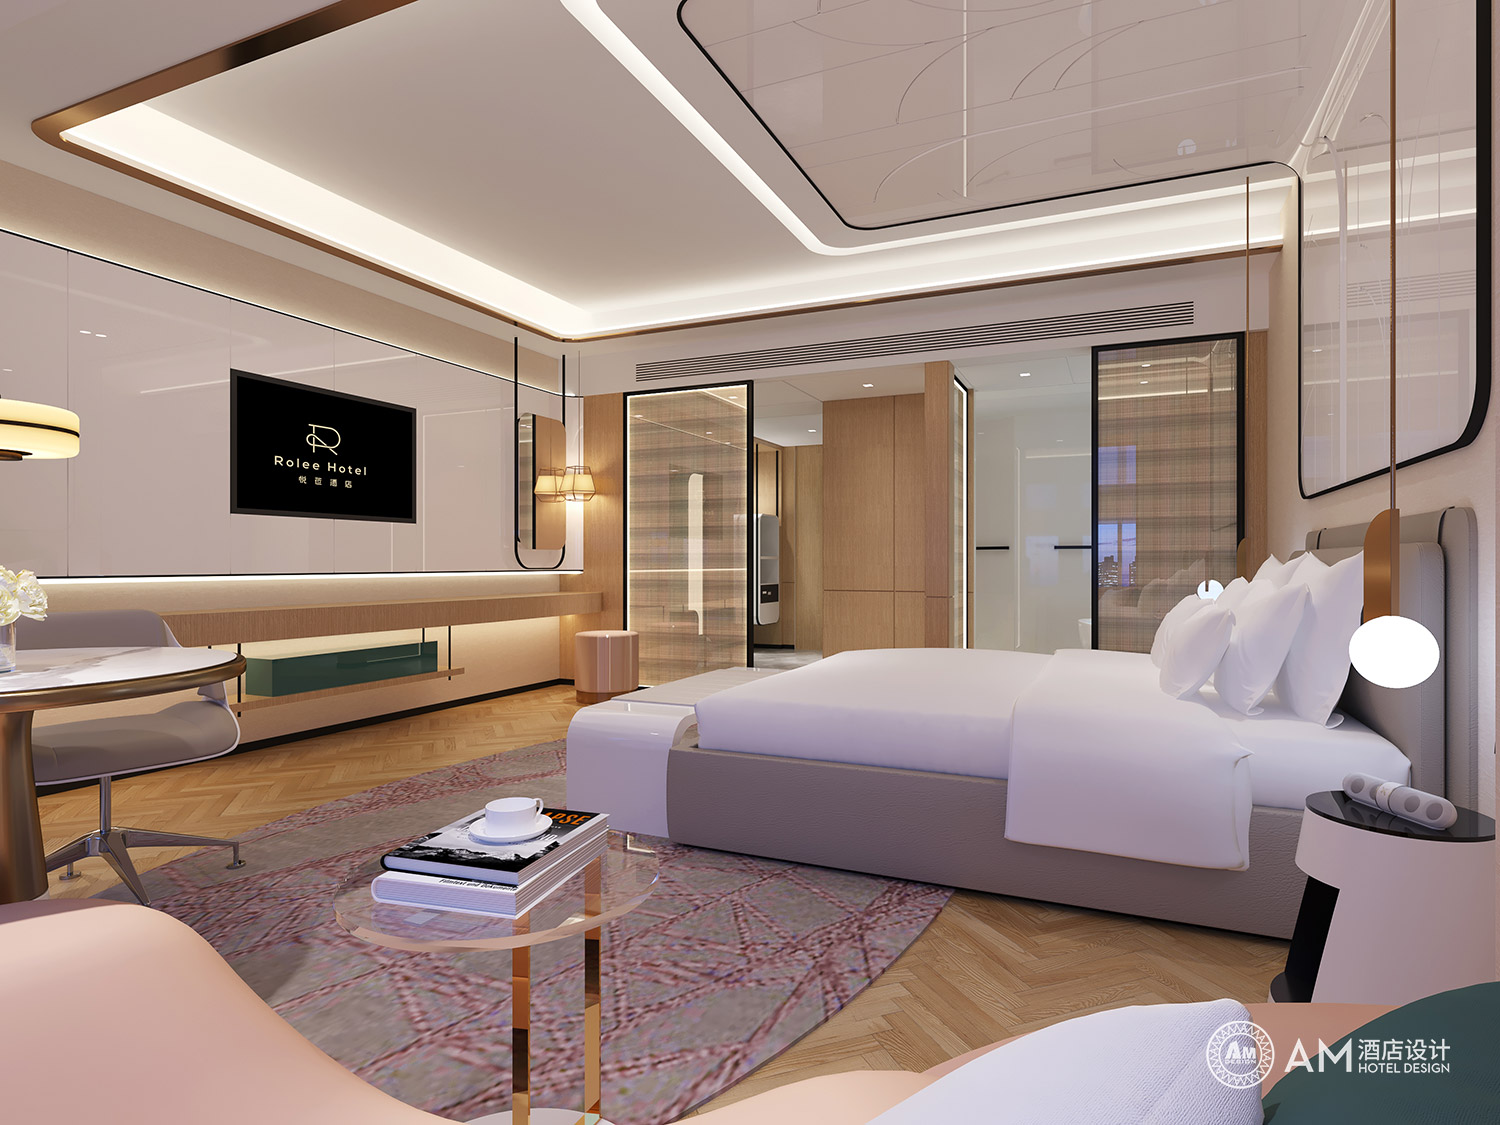 AM DESIGN | Room design of Yuelai Boutique Hotel